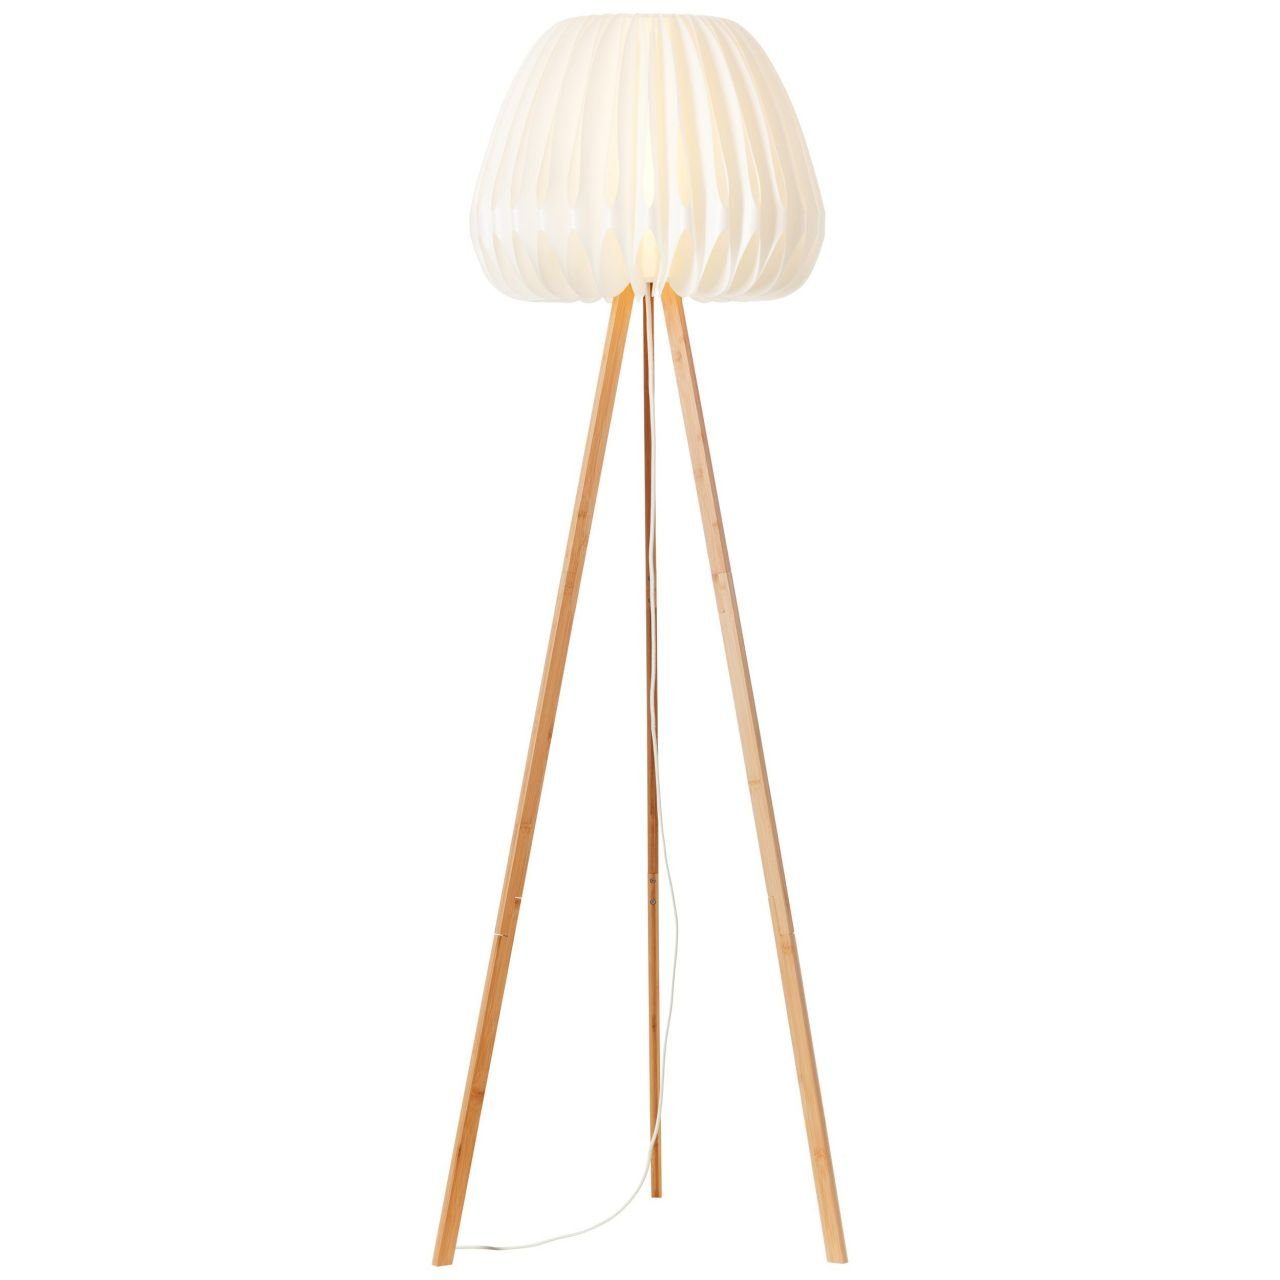 Bambus/Kunststoff Stehlampe Lampe, dreibeinig holz Inna hell/weiß, Inna, Brilliant Standleuchte,